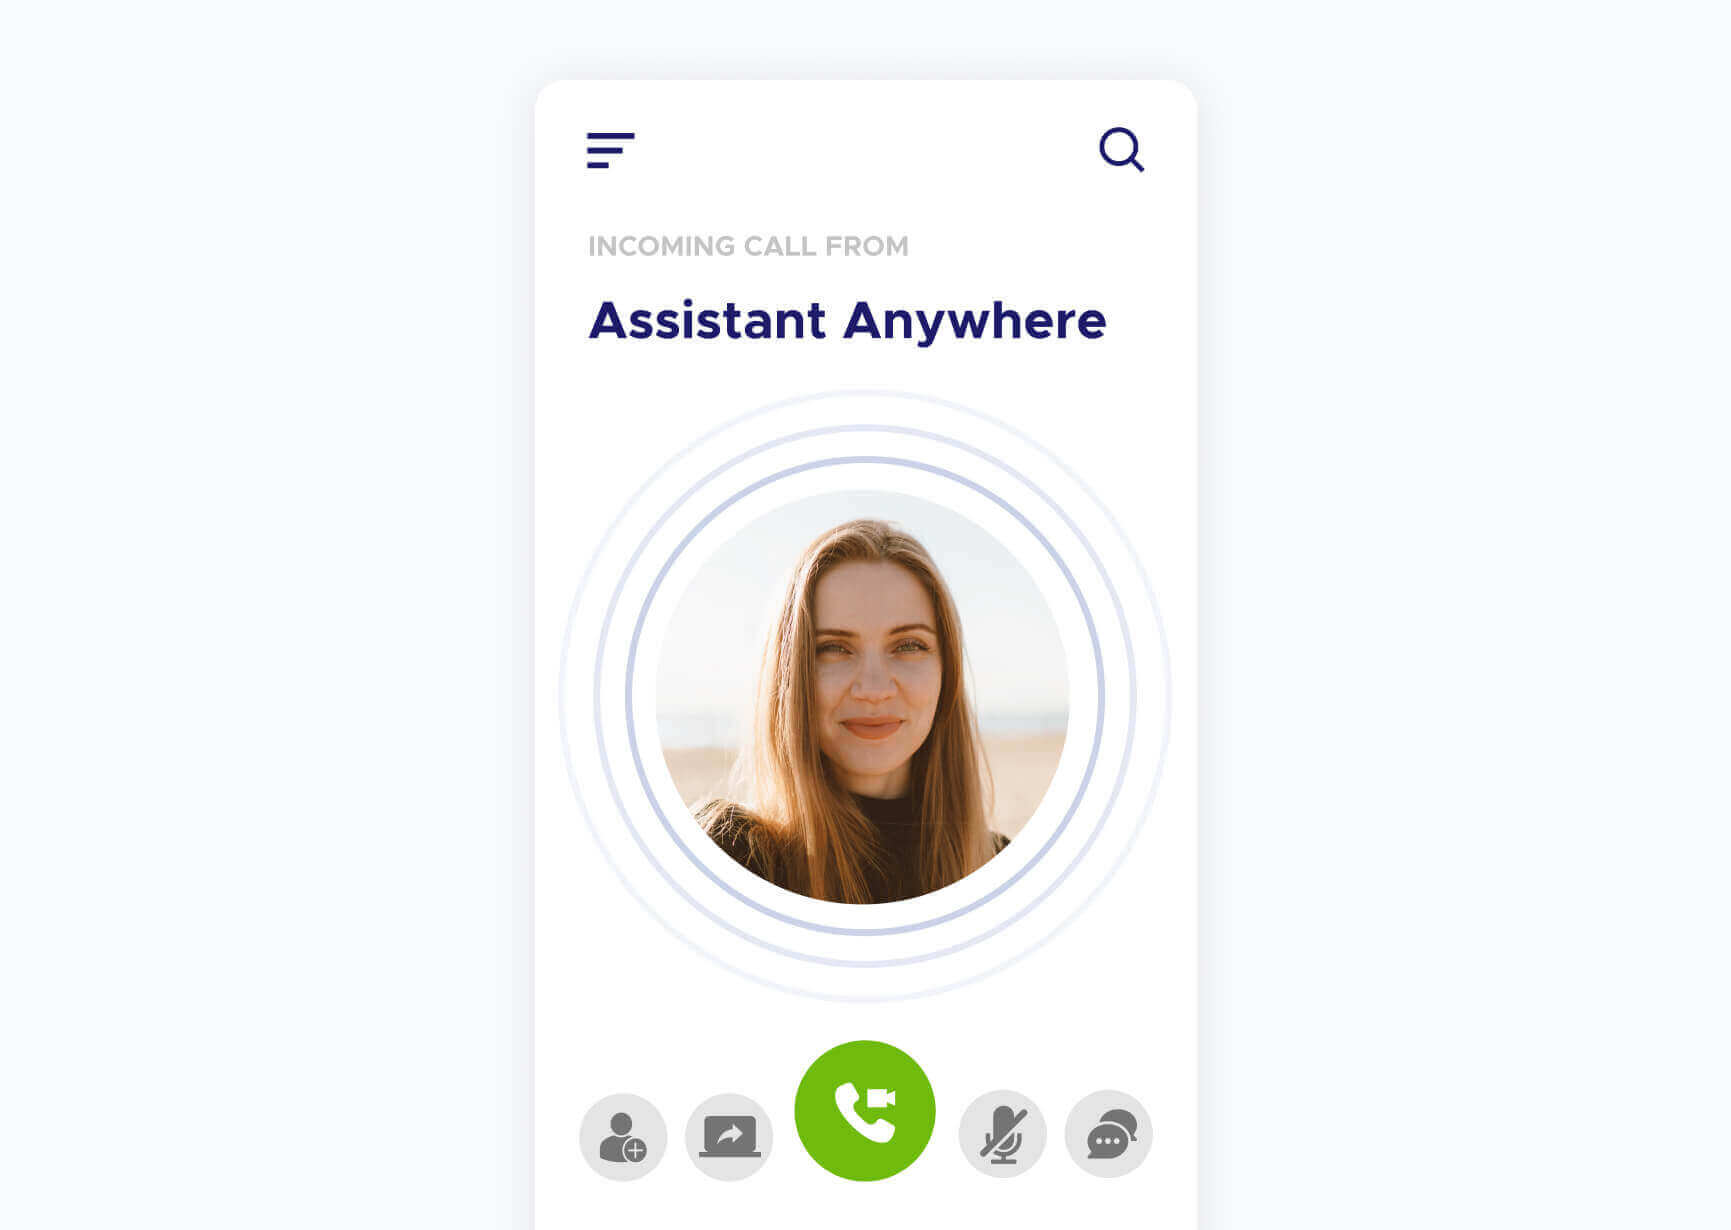 Simulação de uma chamada de vídeo do aplicativo Assistant Anywhere